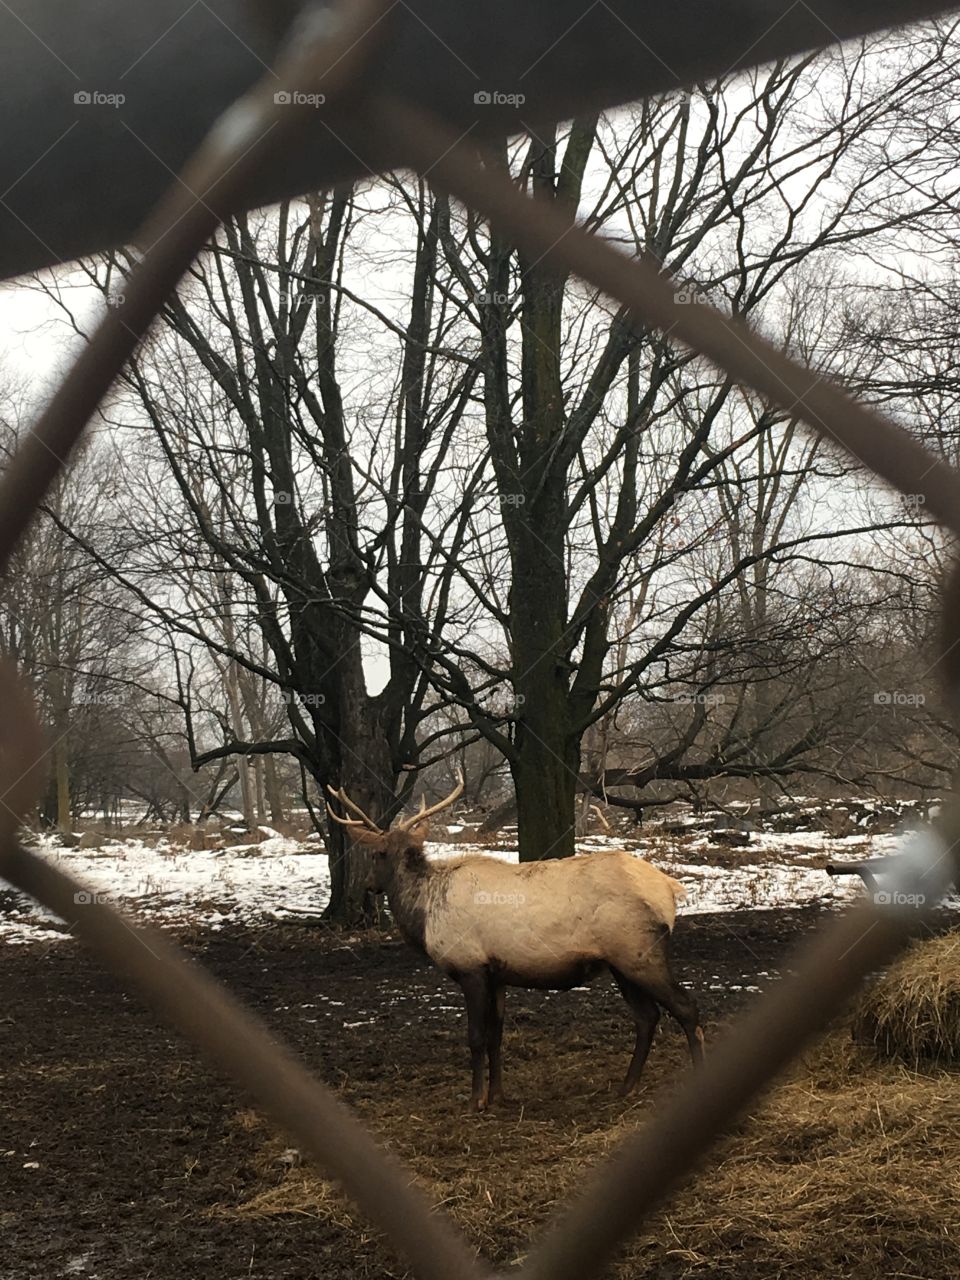 Elk
Viewing